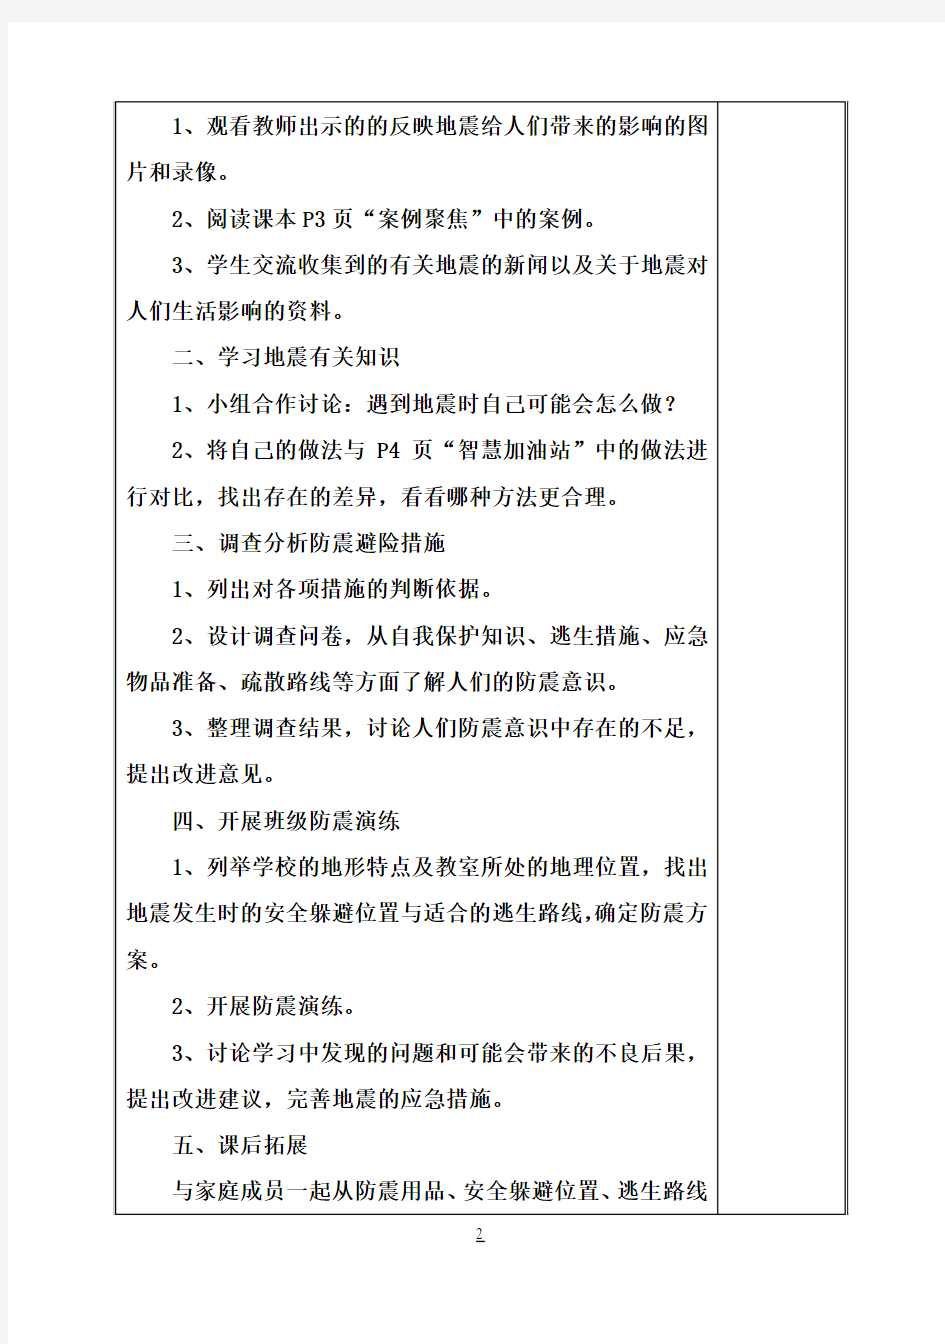 上海科技教育出版社小学六年级综合实践教案(上册)